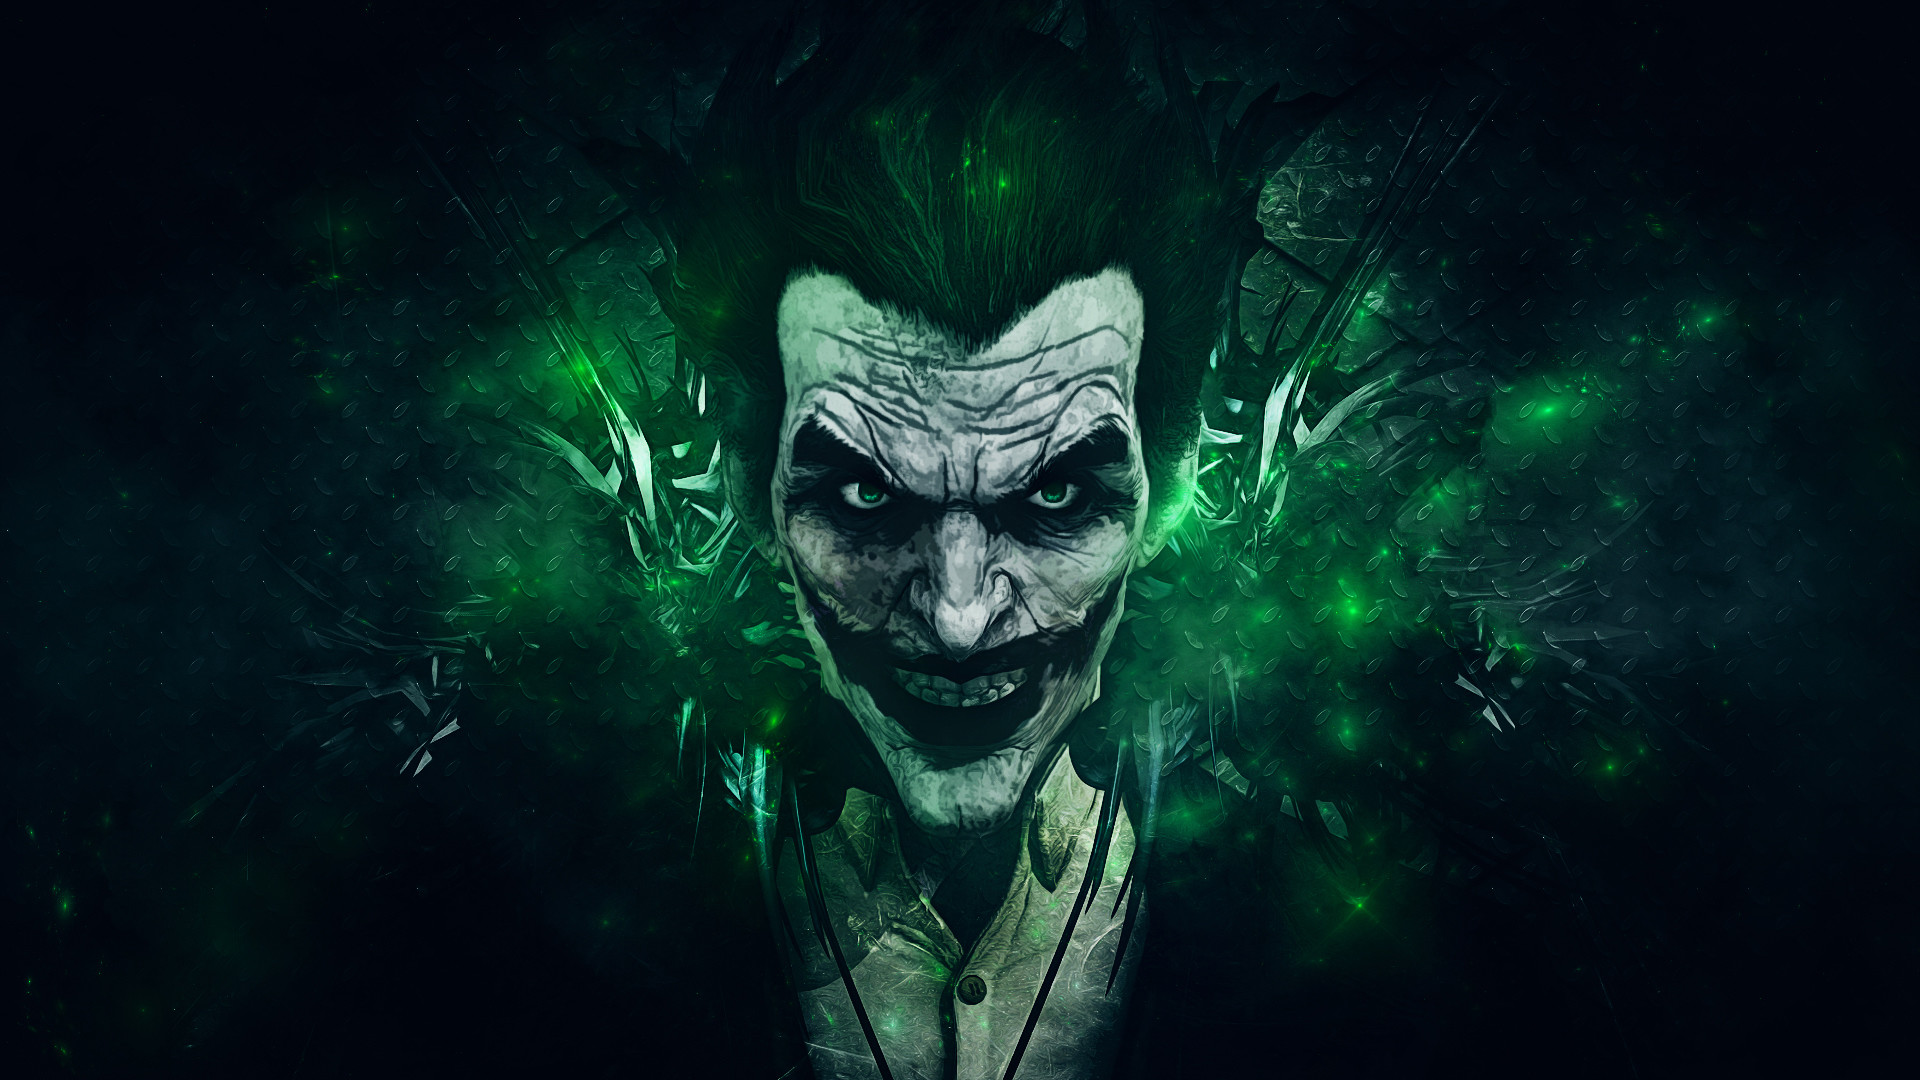 Latest Full HD 1080p Joker Wallpapers HD Desktop Backgrounds